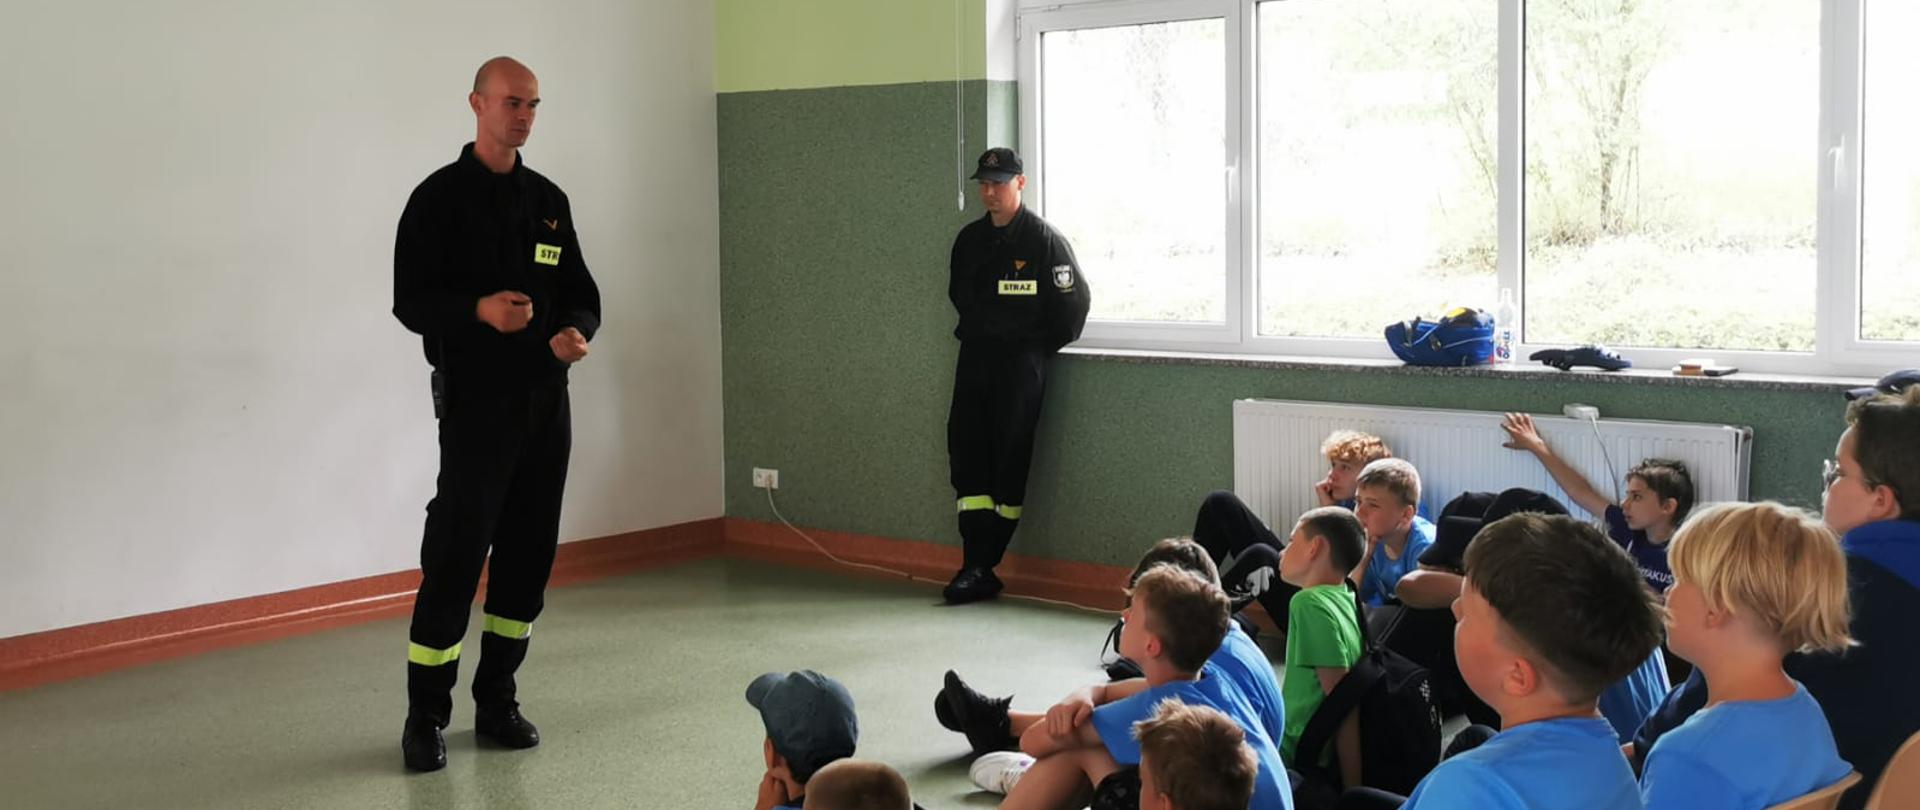 Zdjęcie przedstawia dwóch strażaków w szkolę podczas zajęć edukacyjnych na sali. młodzież siedzi i słucha strażaków.